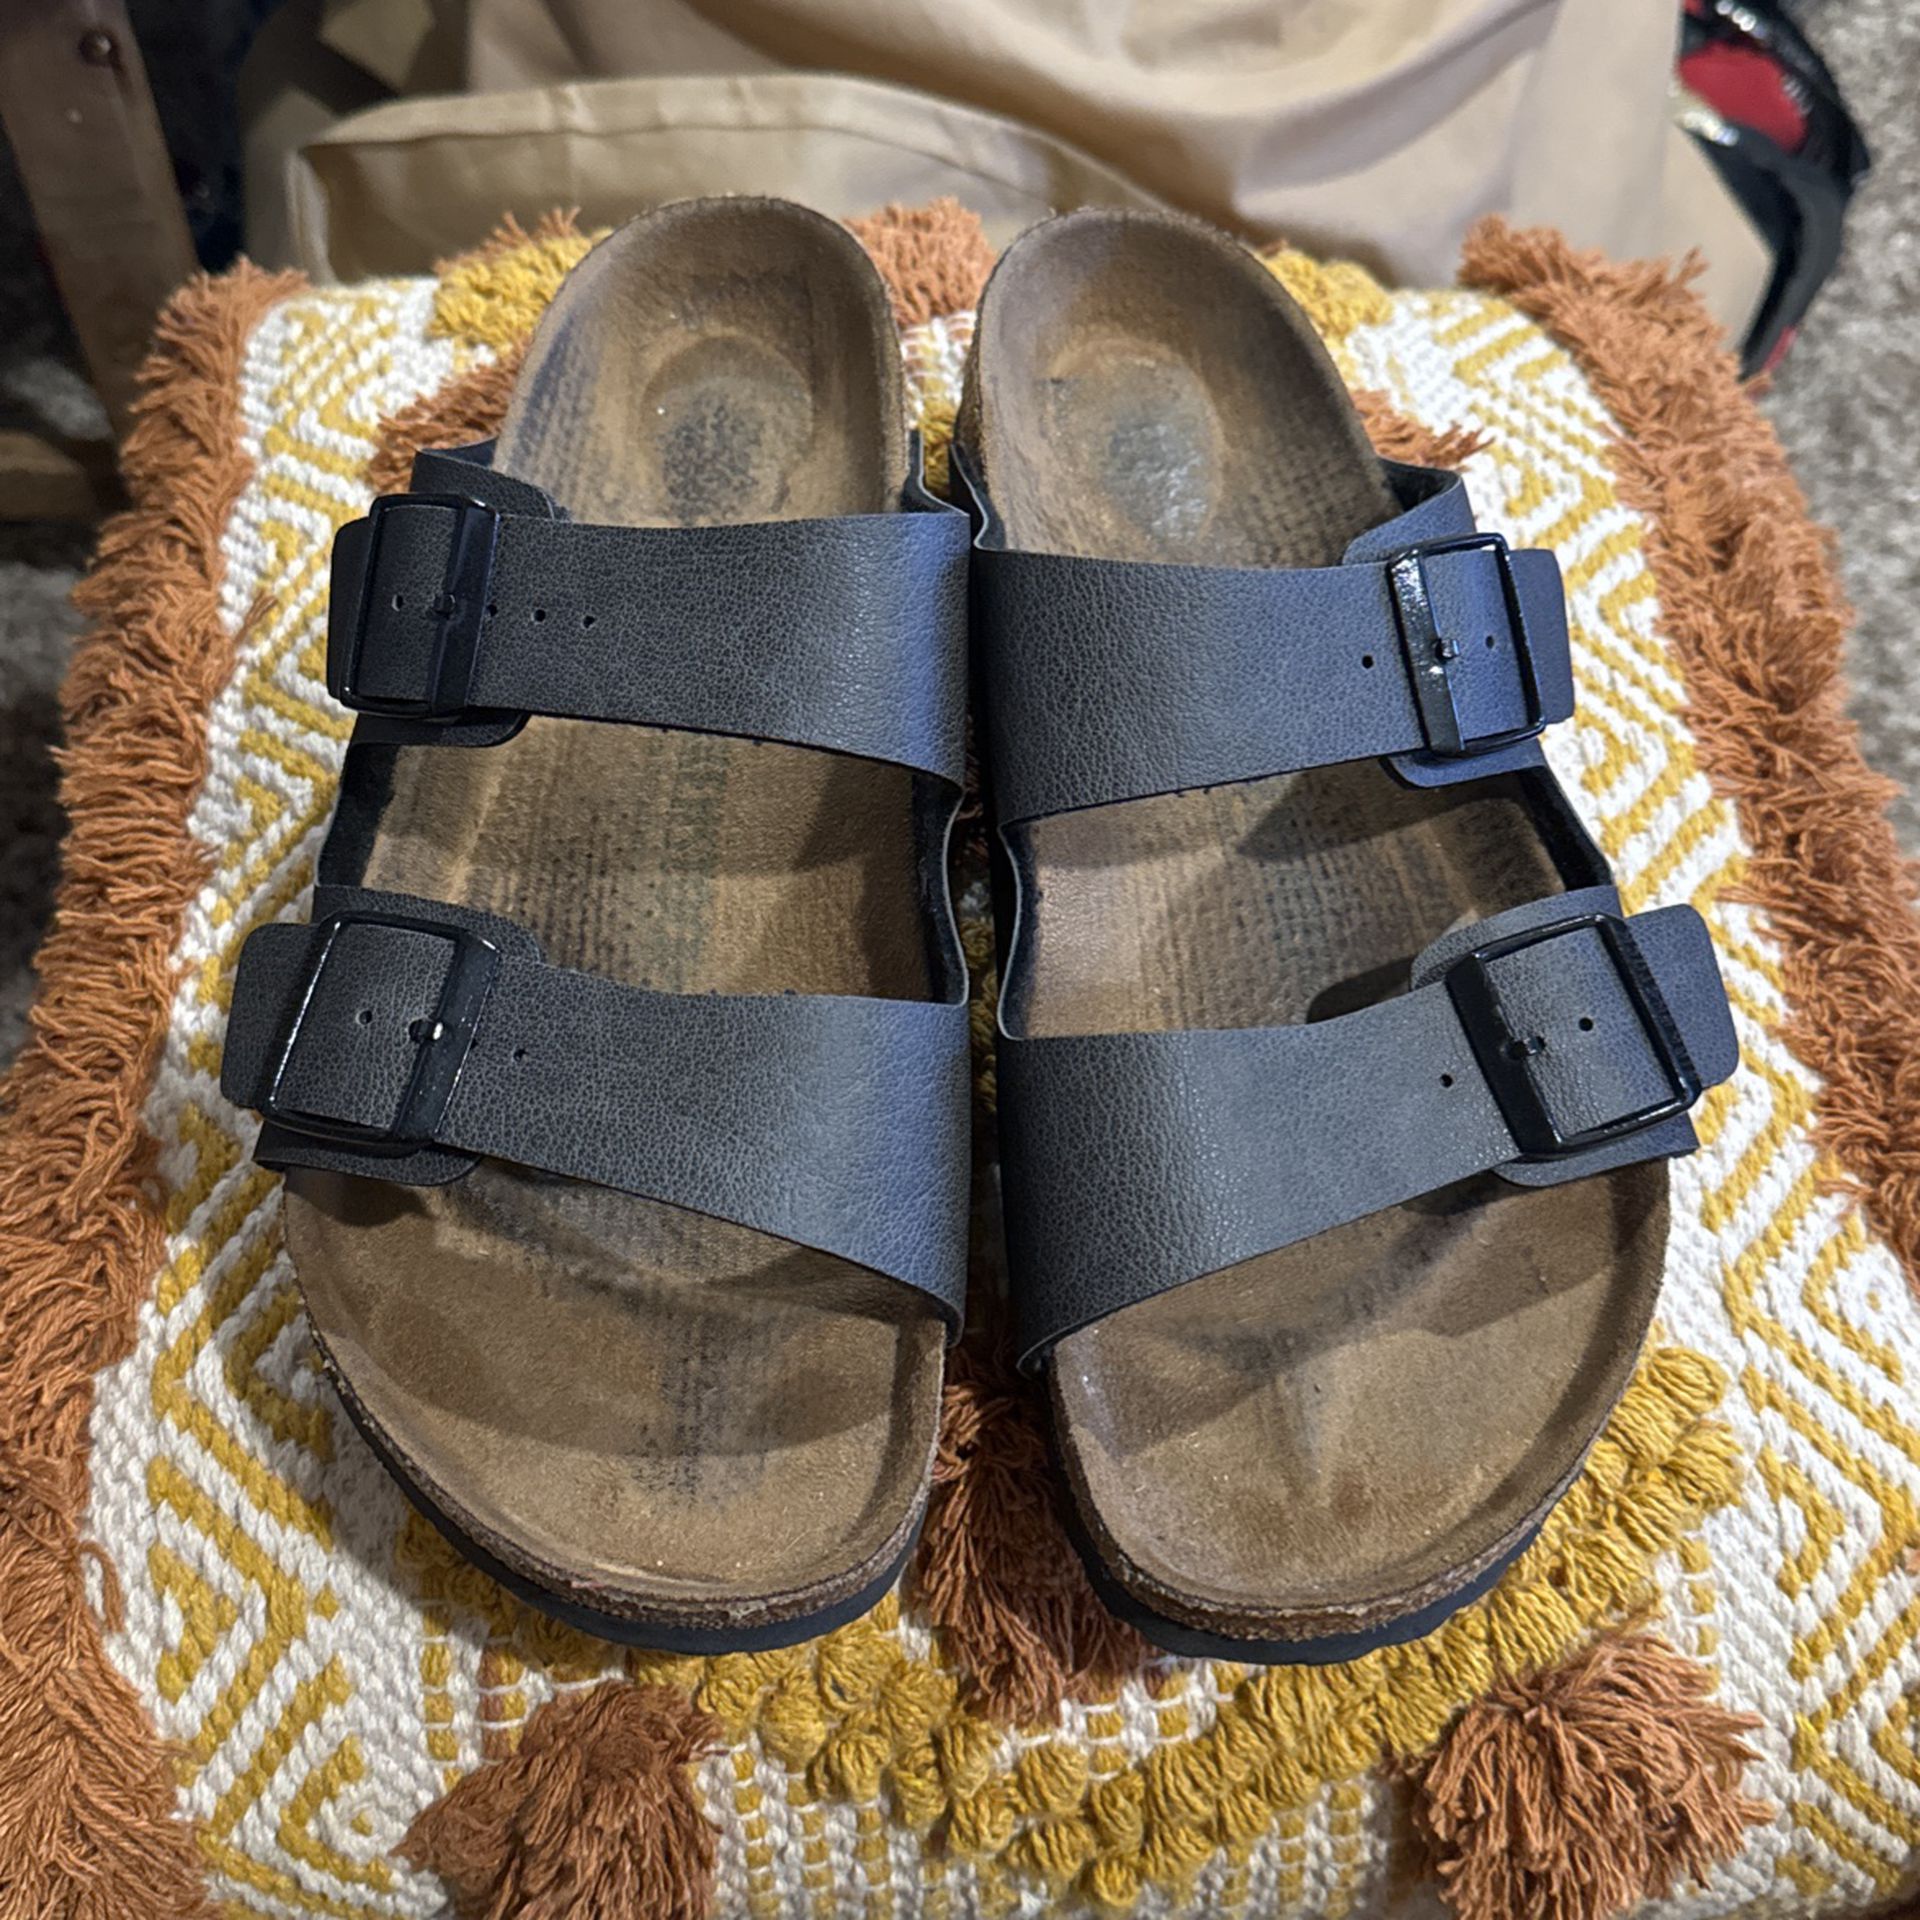 Birkenstock Women’s Sandals -10/11 